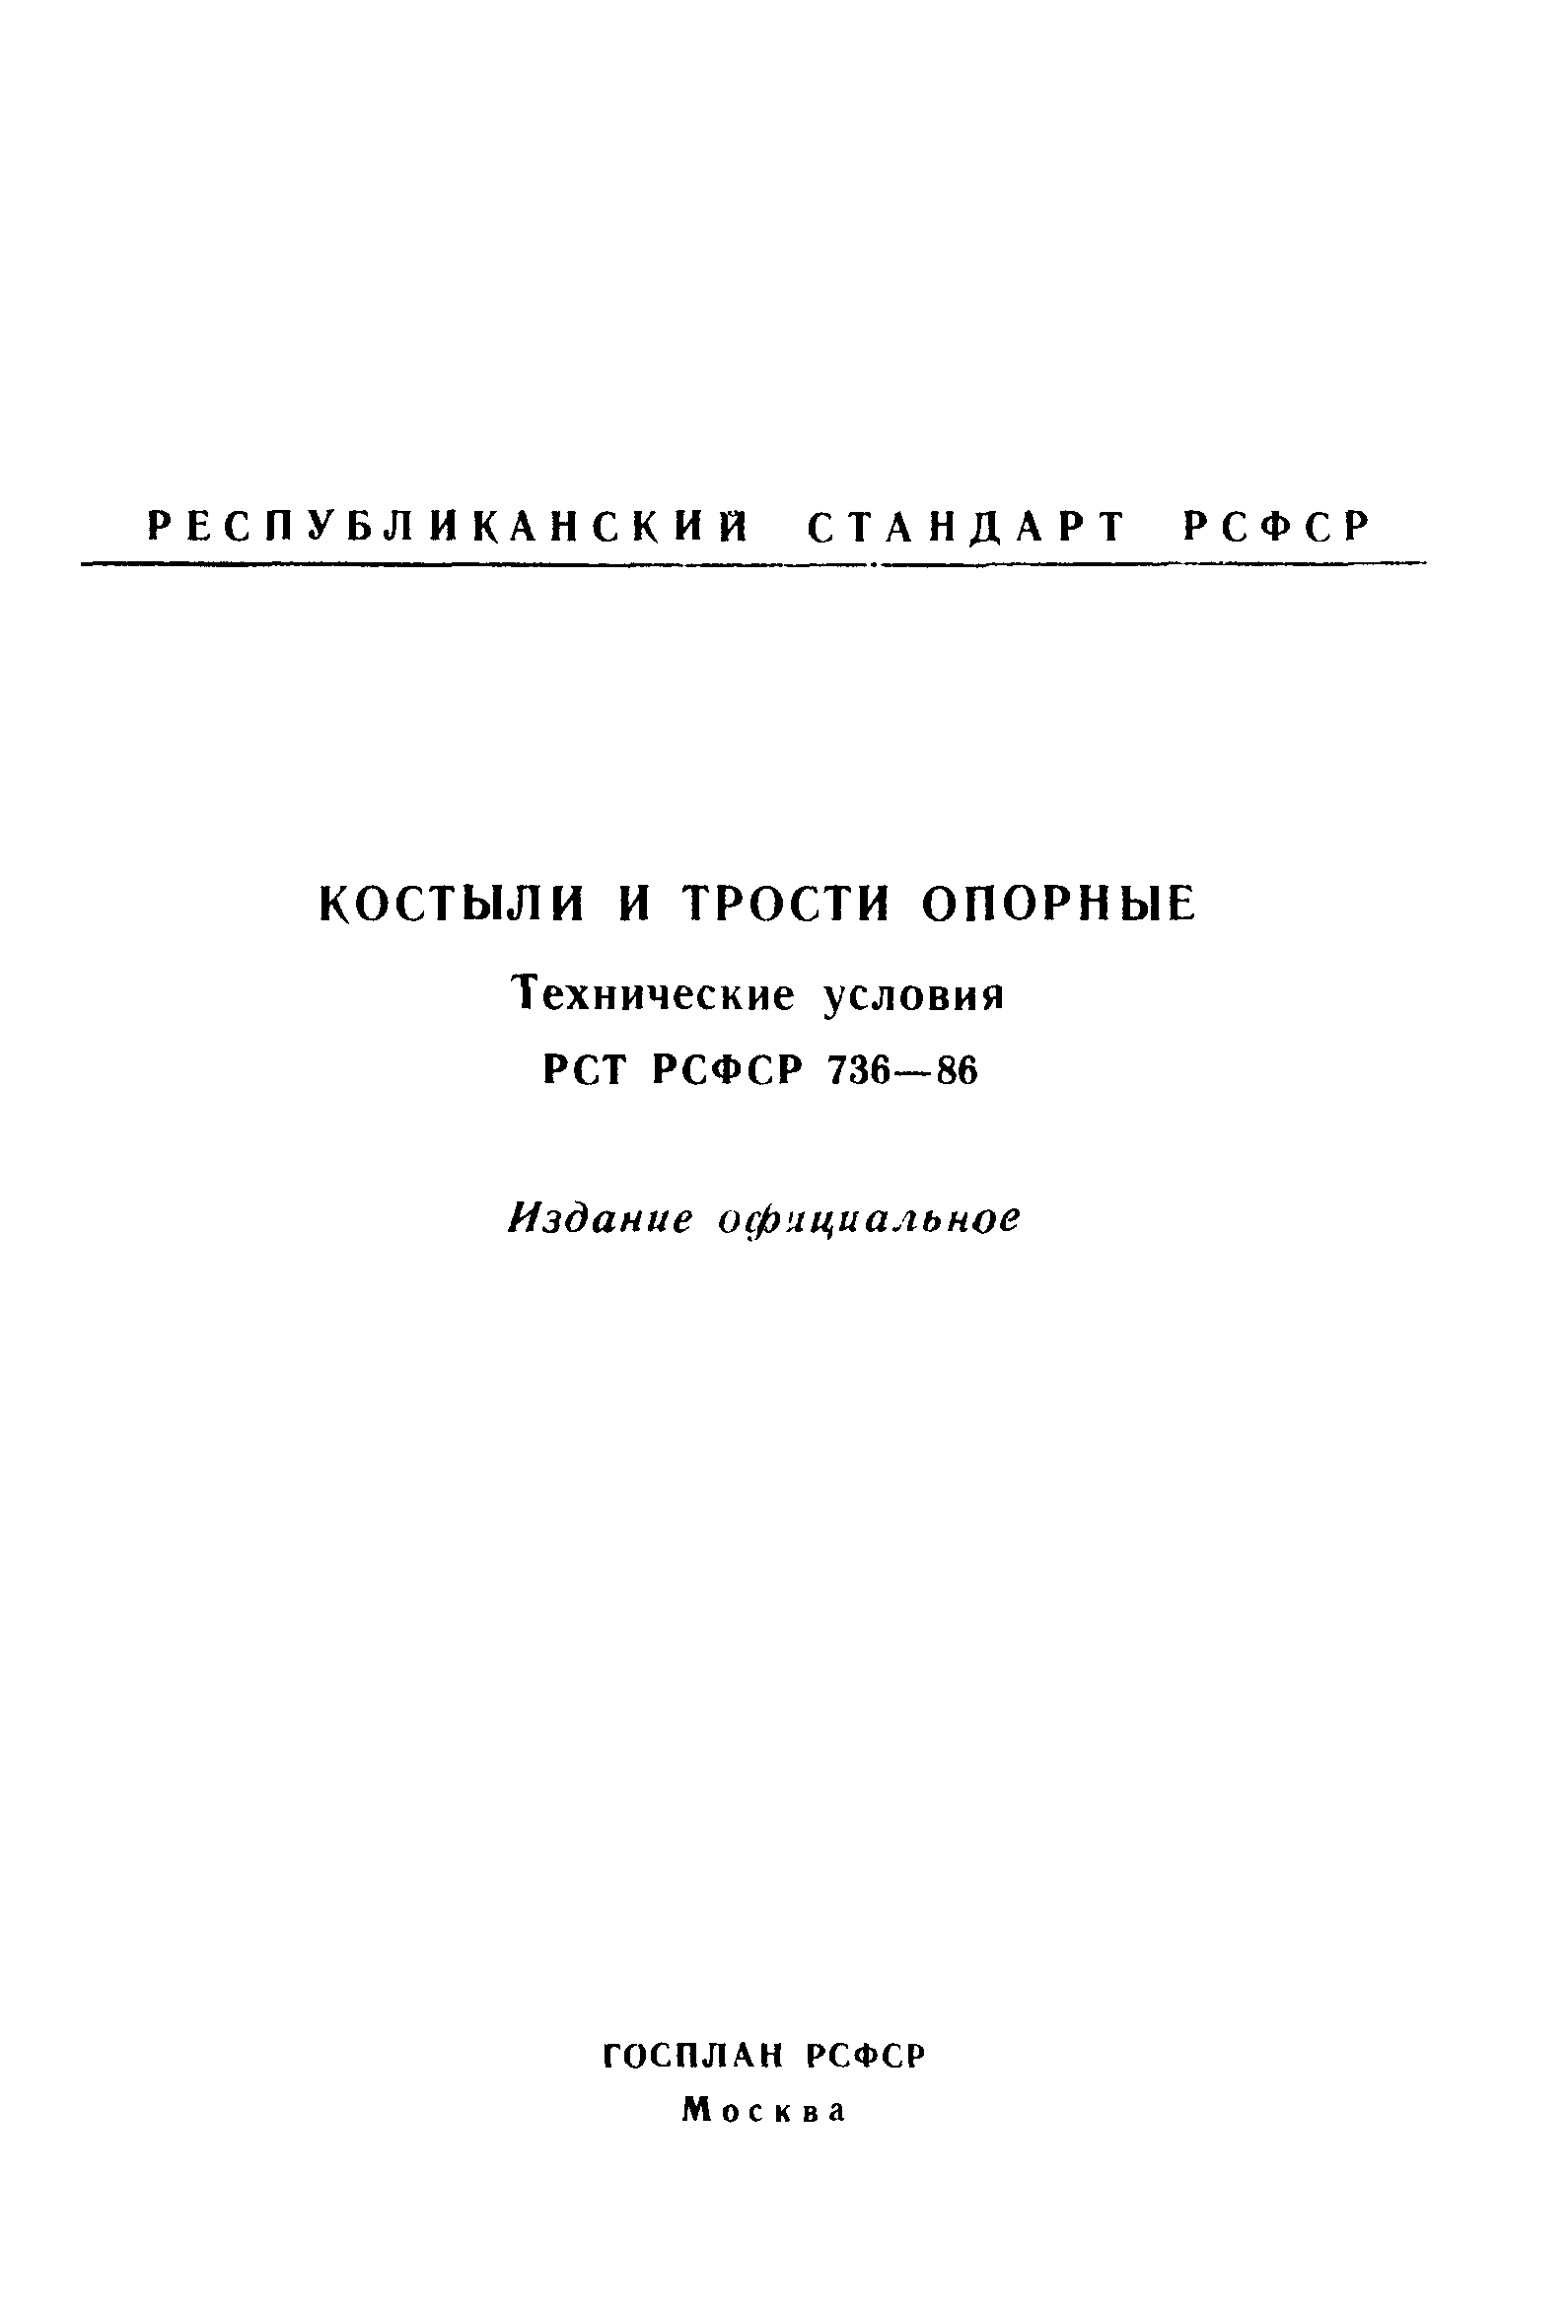 РСТ РСФСР 736-86